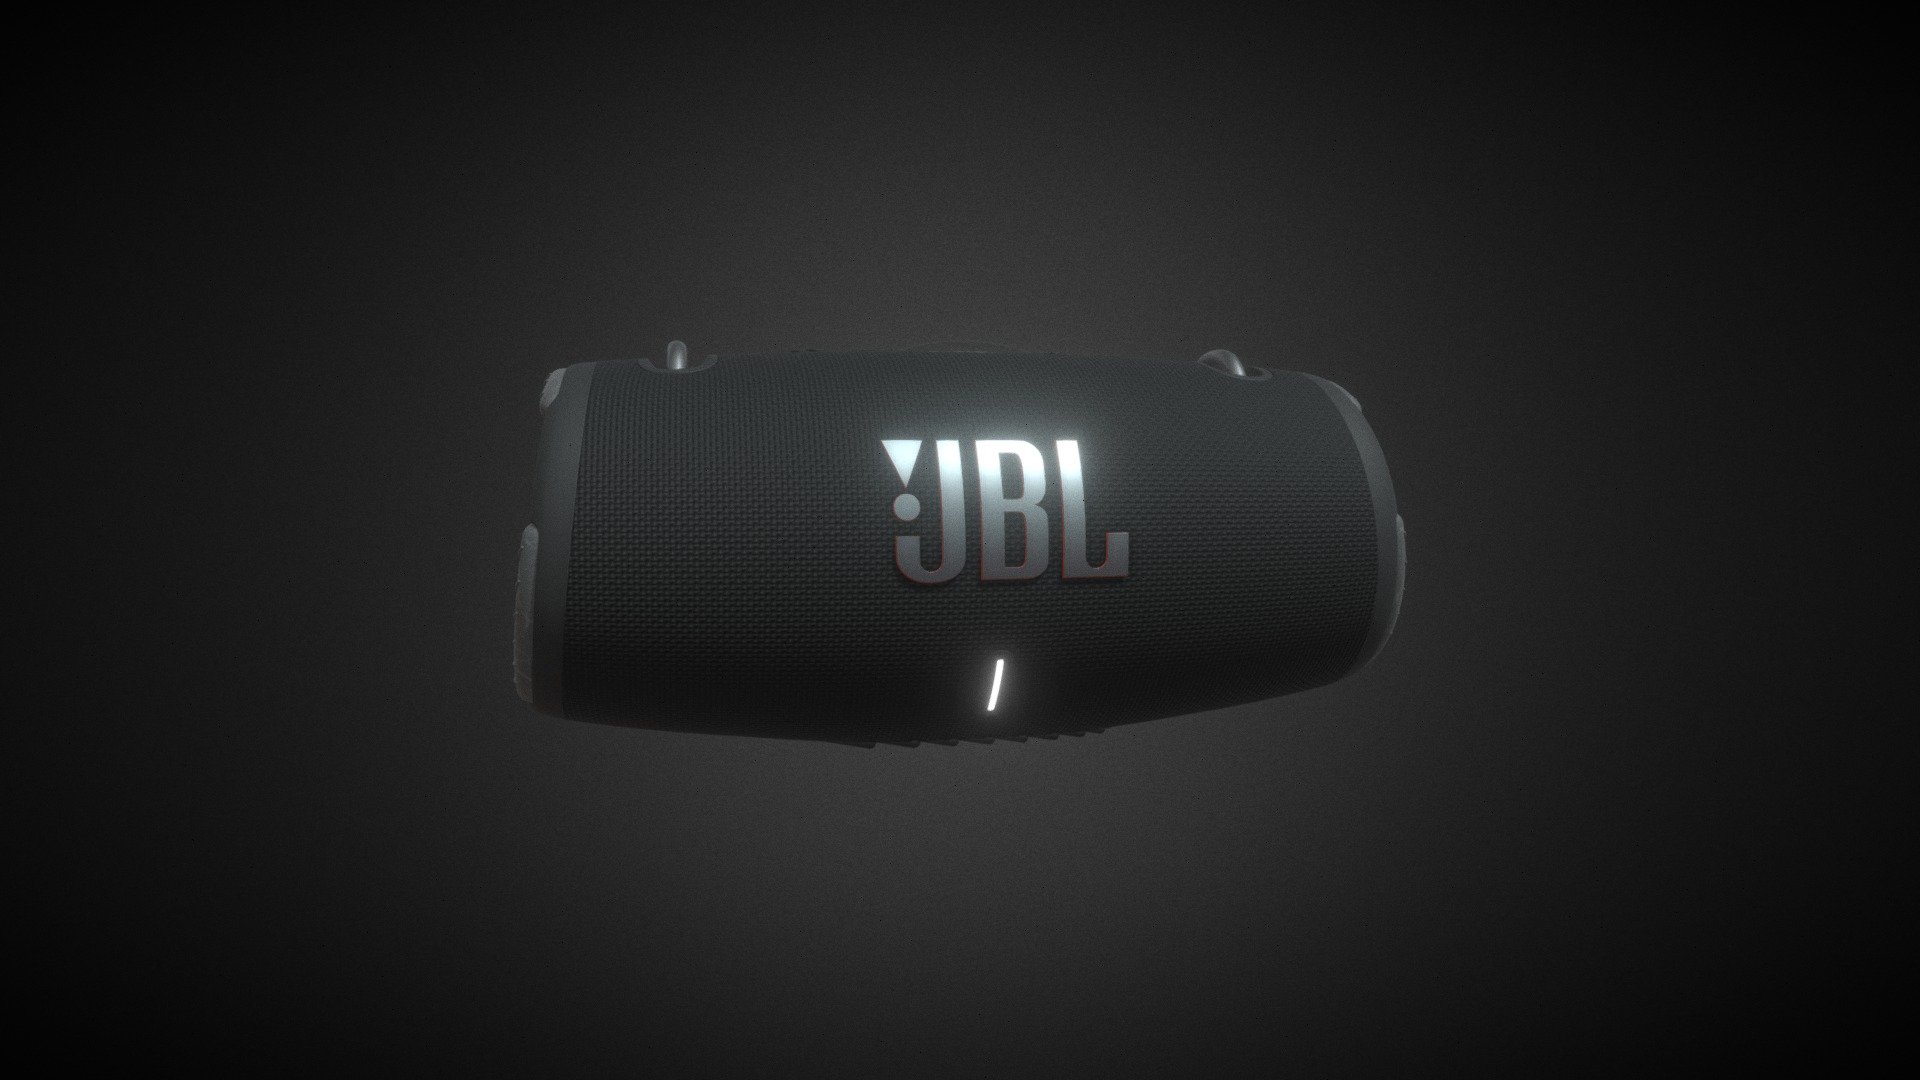 Son puissant JBL Original Pro
Ses quatre haut-parleurs et ses deux radiateurs de graves JBL diffusent un son immersif dynamique avec des basses profondes et de nombreux détails. Vous plongez dans la musique partout où vous allez - JBL Xtreme 3 - Download Free 3D model by polyman (@Polyman_3D) 3d model